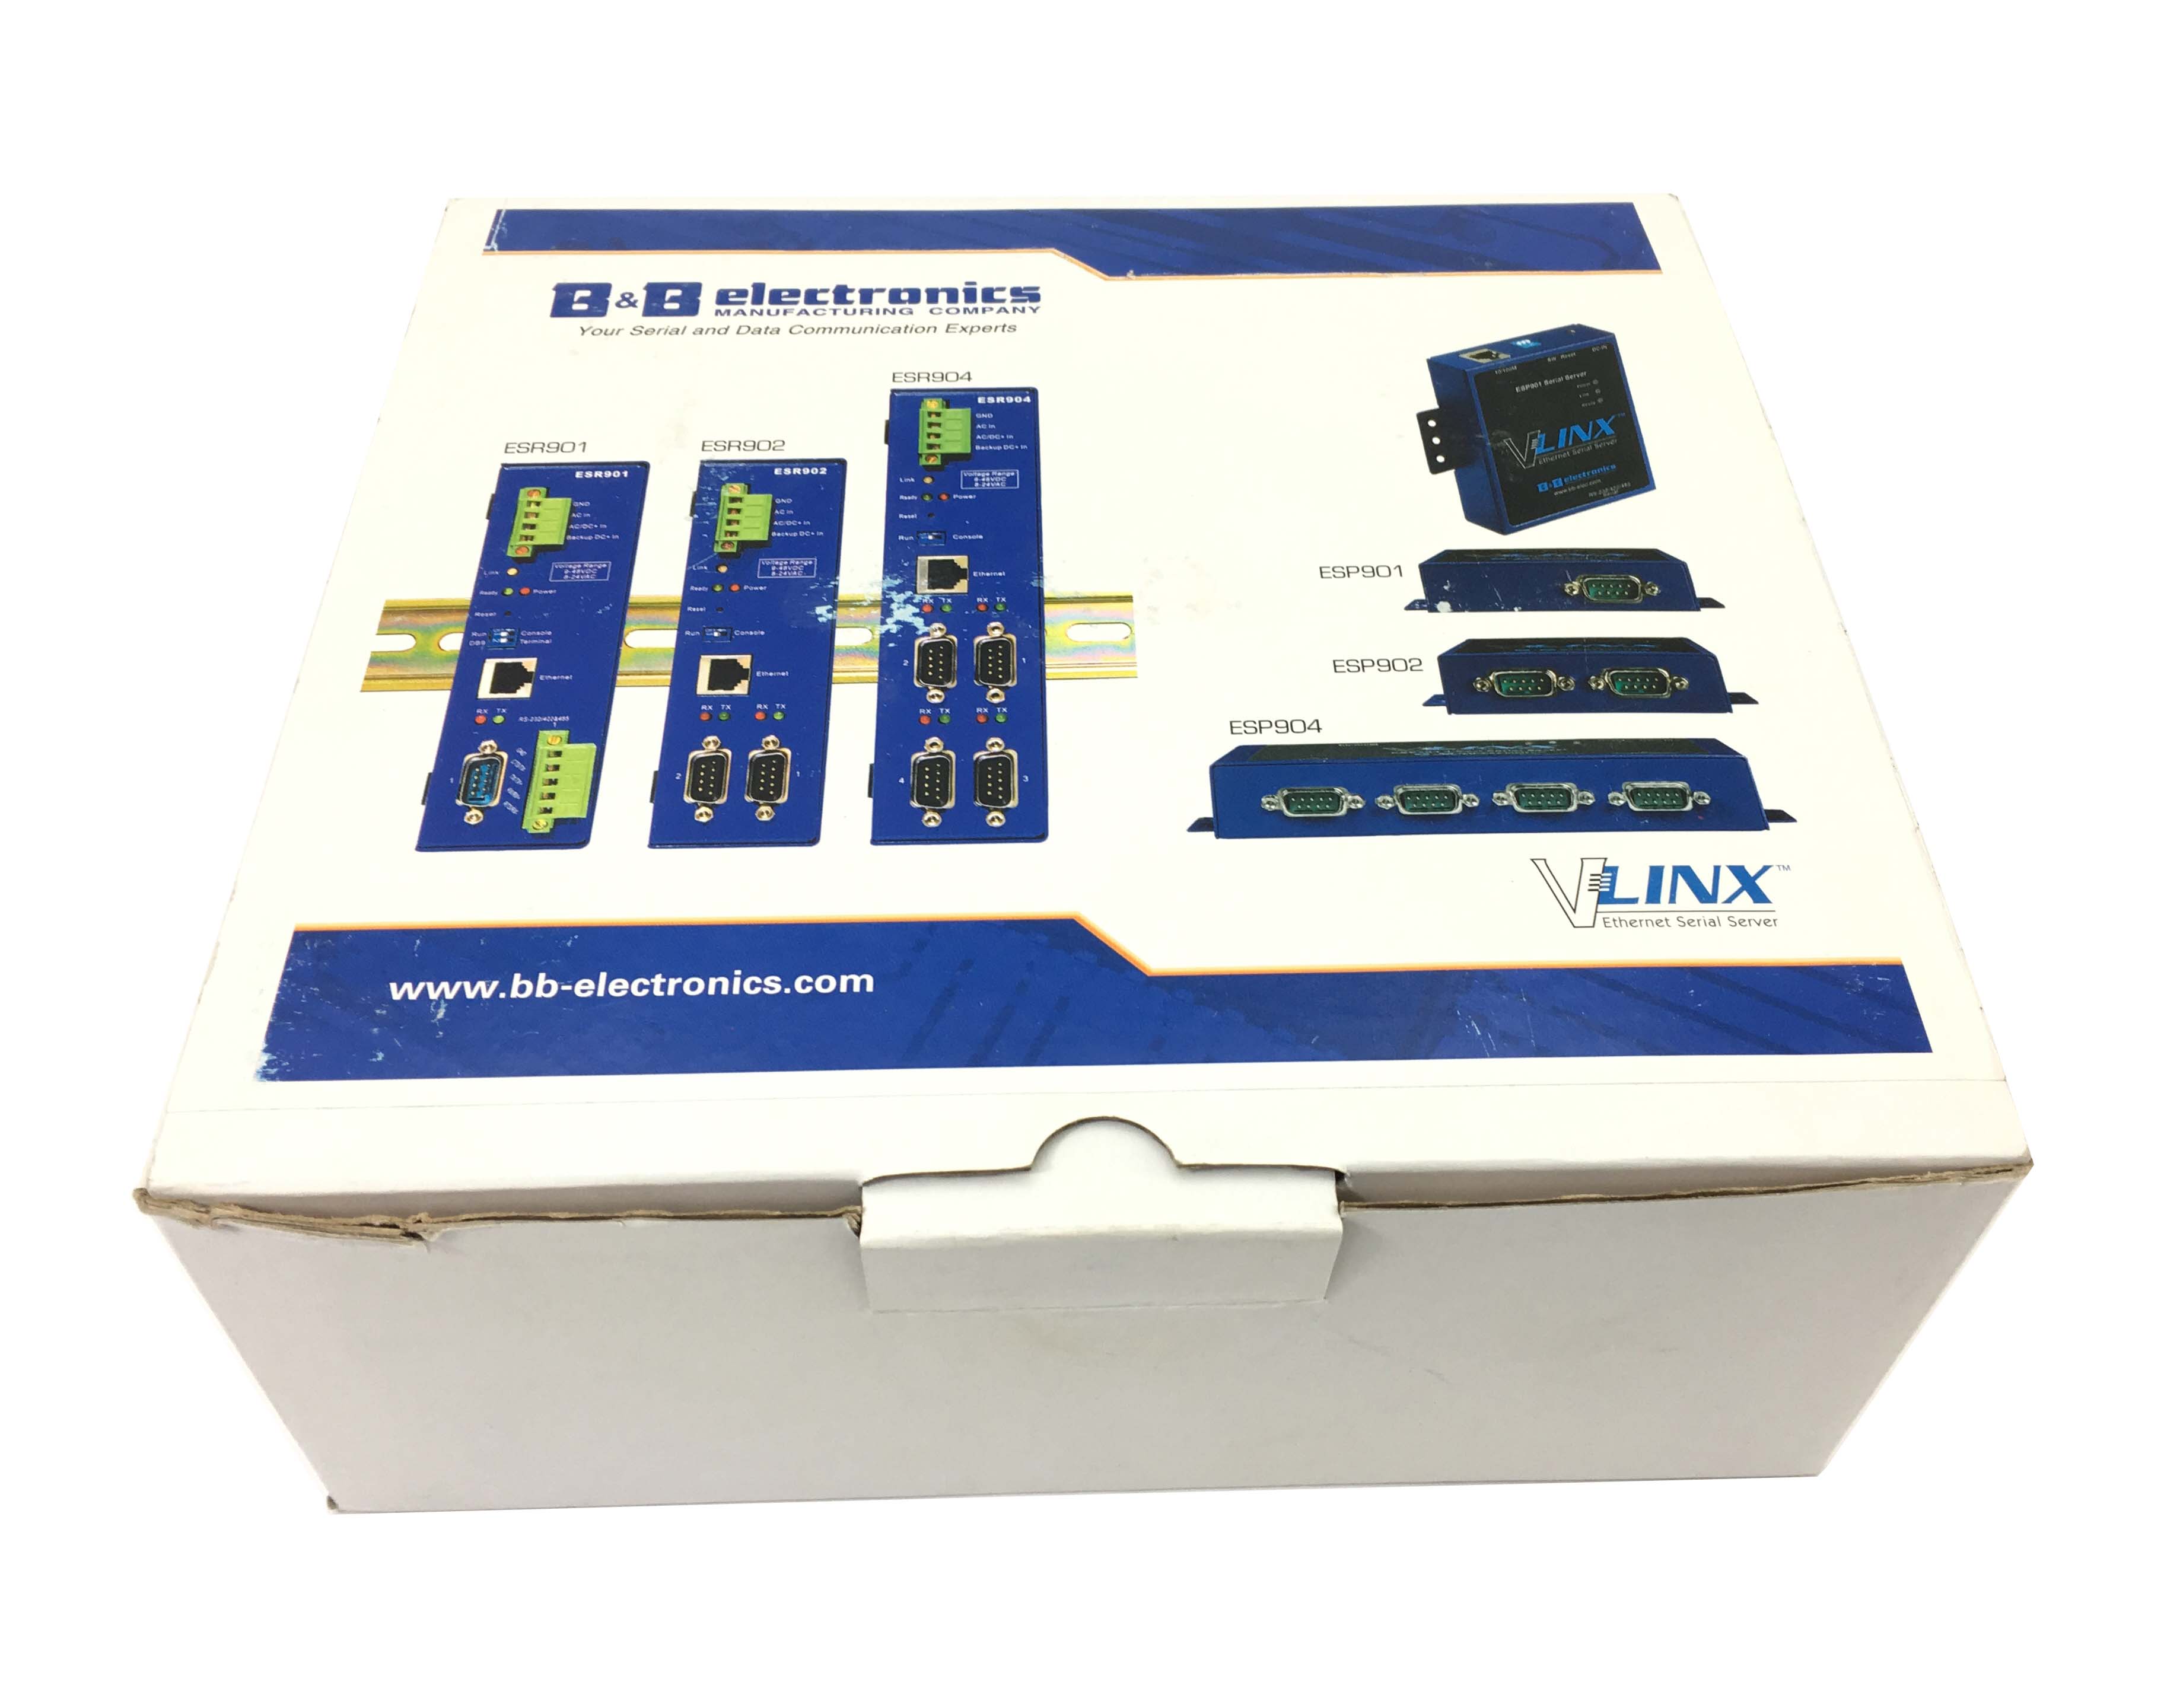 Vlinx Esp904 Ethernet Serial Server (BB-ESP904E)